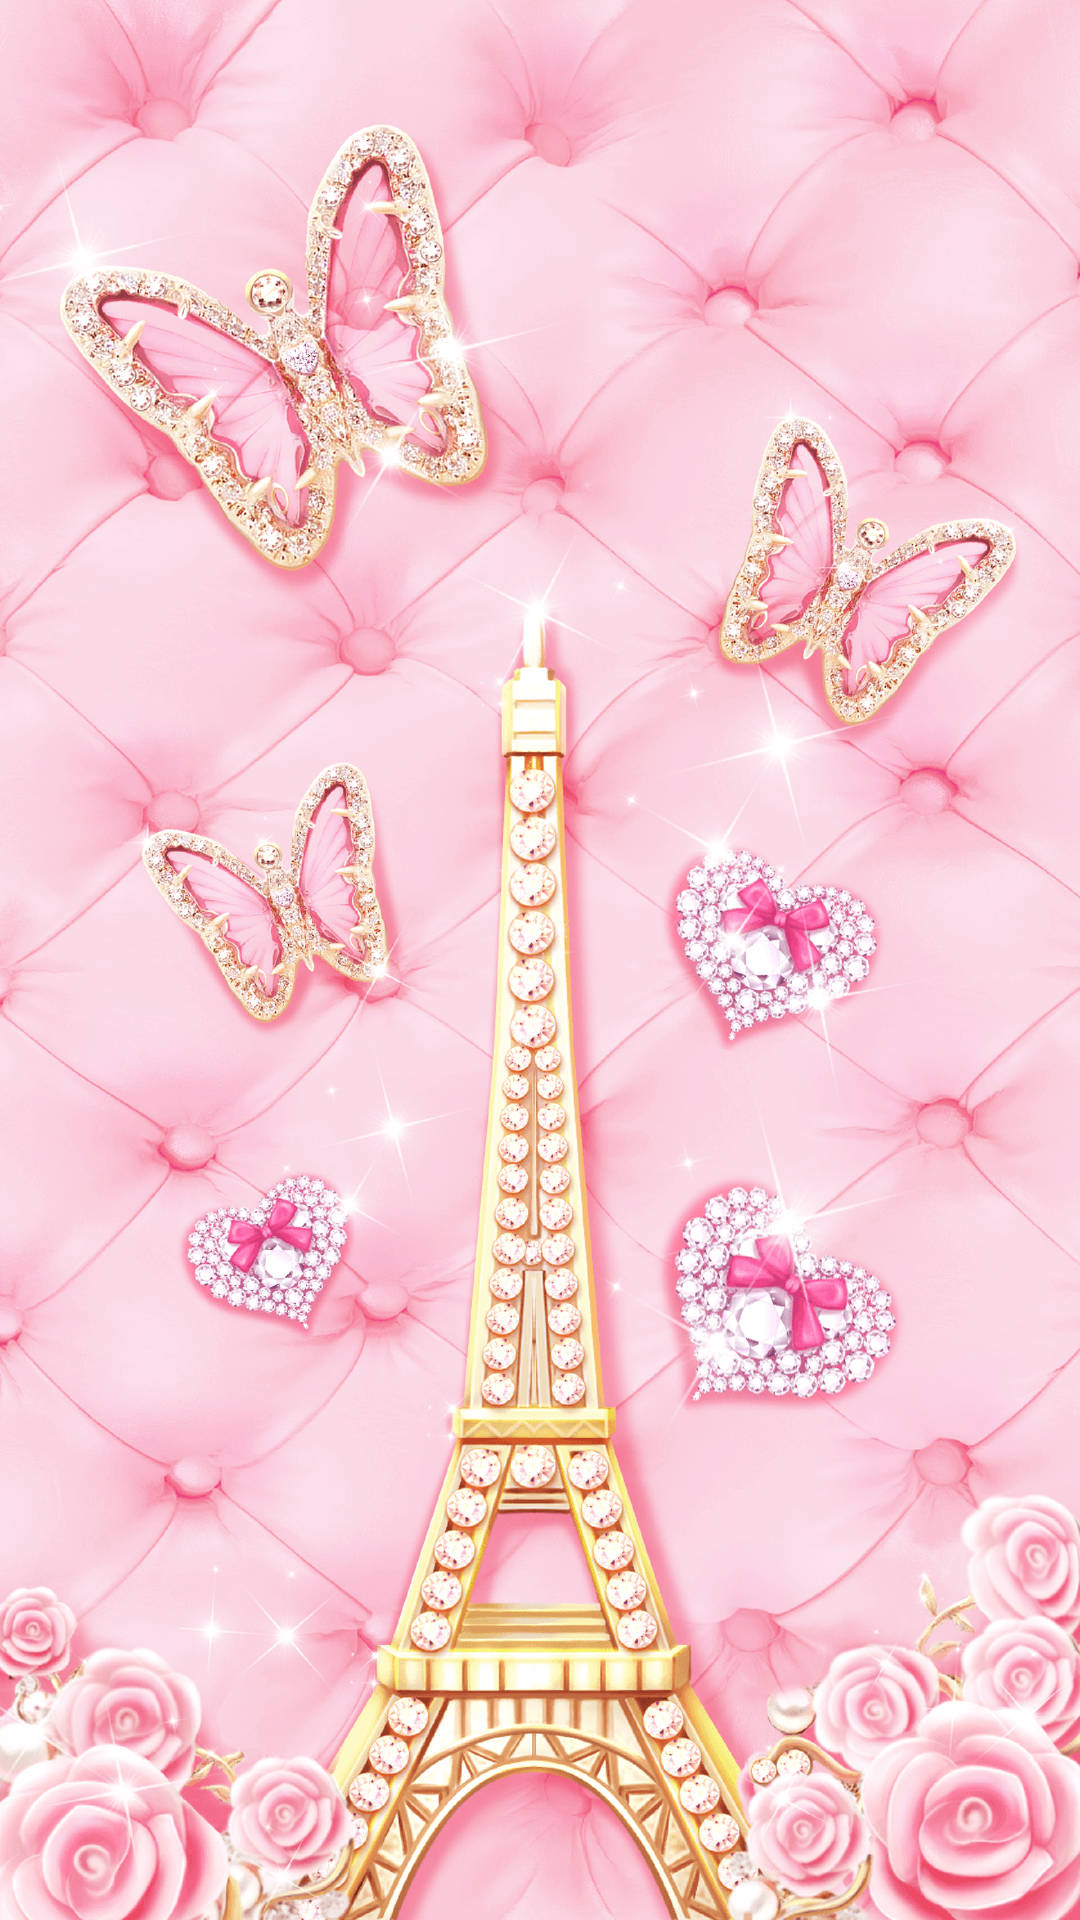 Cute Pink Eiffel Tower Art Wallpaper